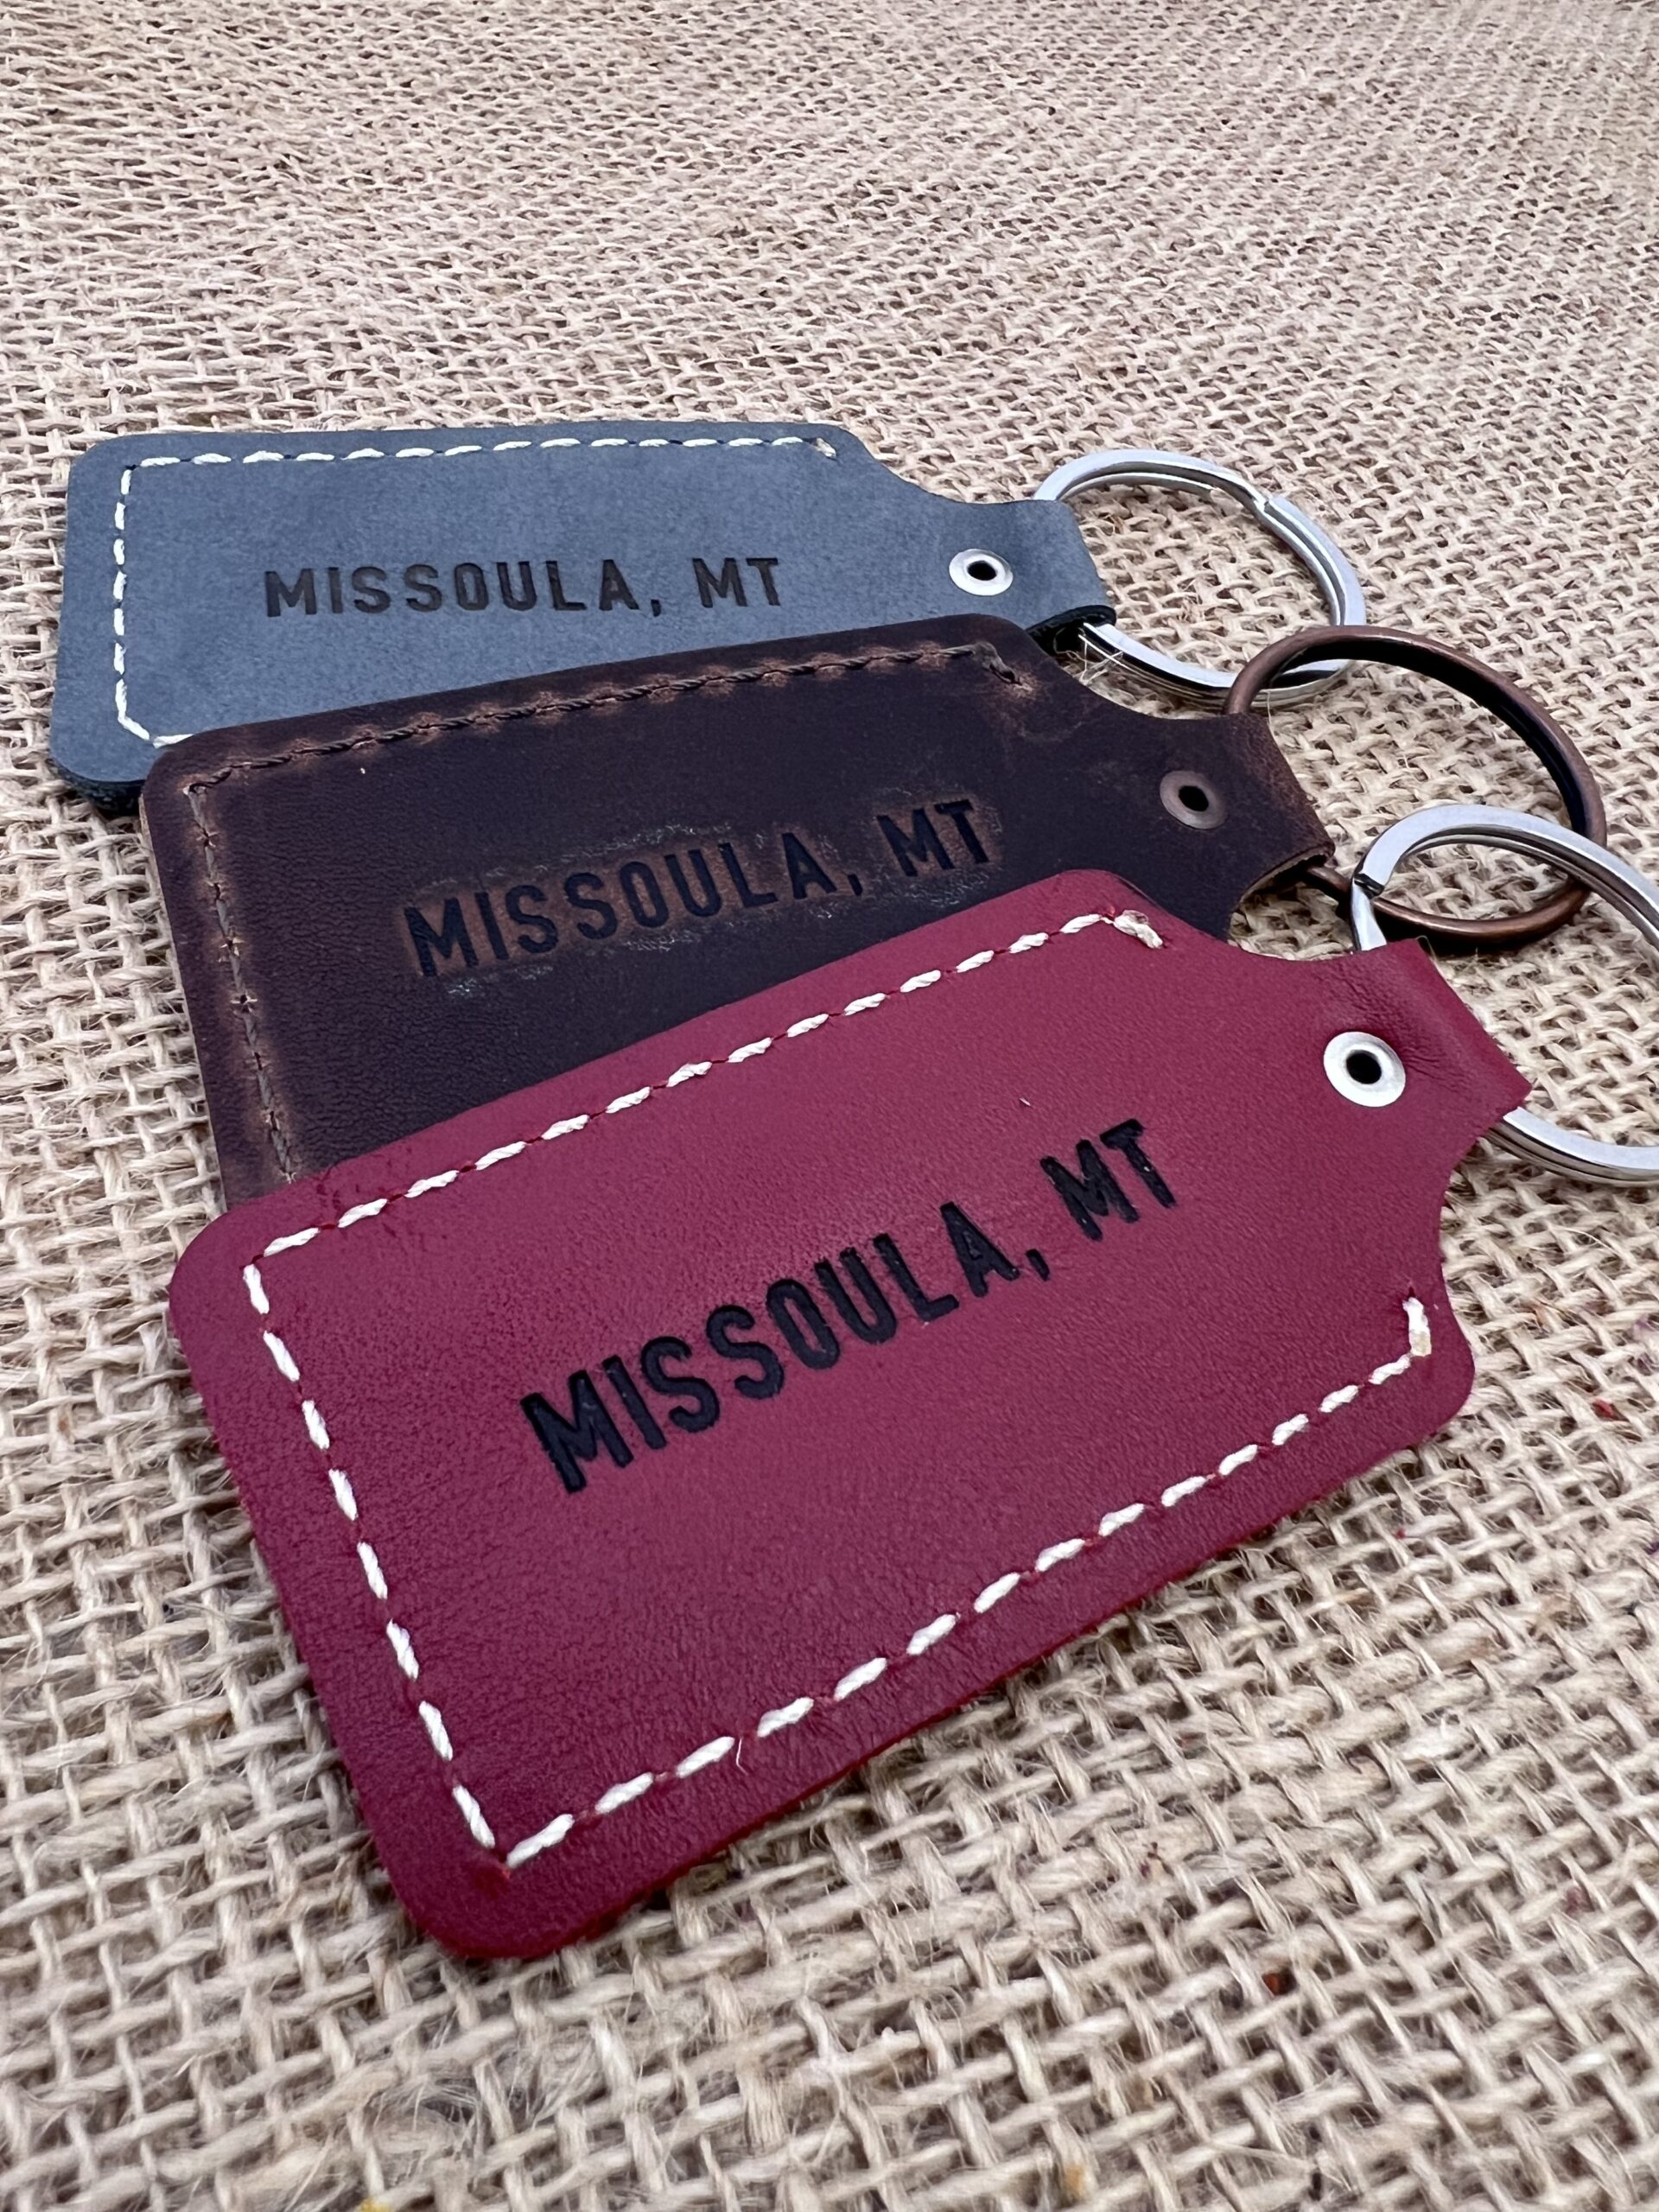 Missoula, MT keychains